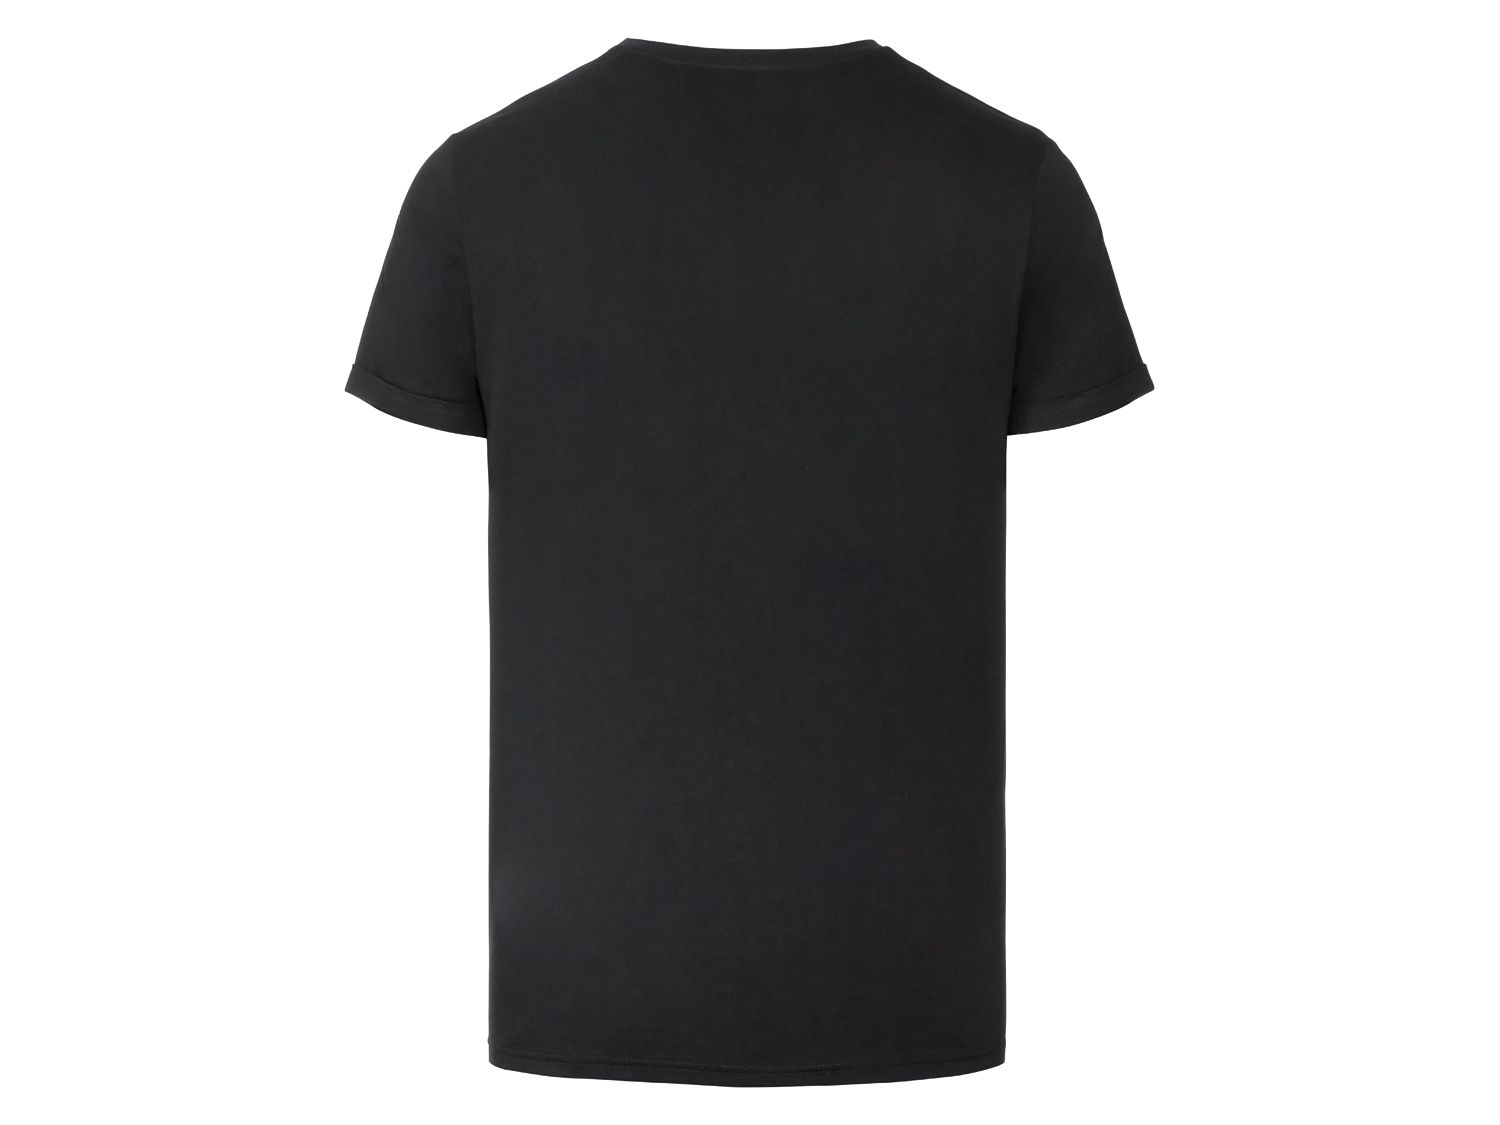 تی شرت مردانه 28509 مارک LIVERGY